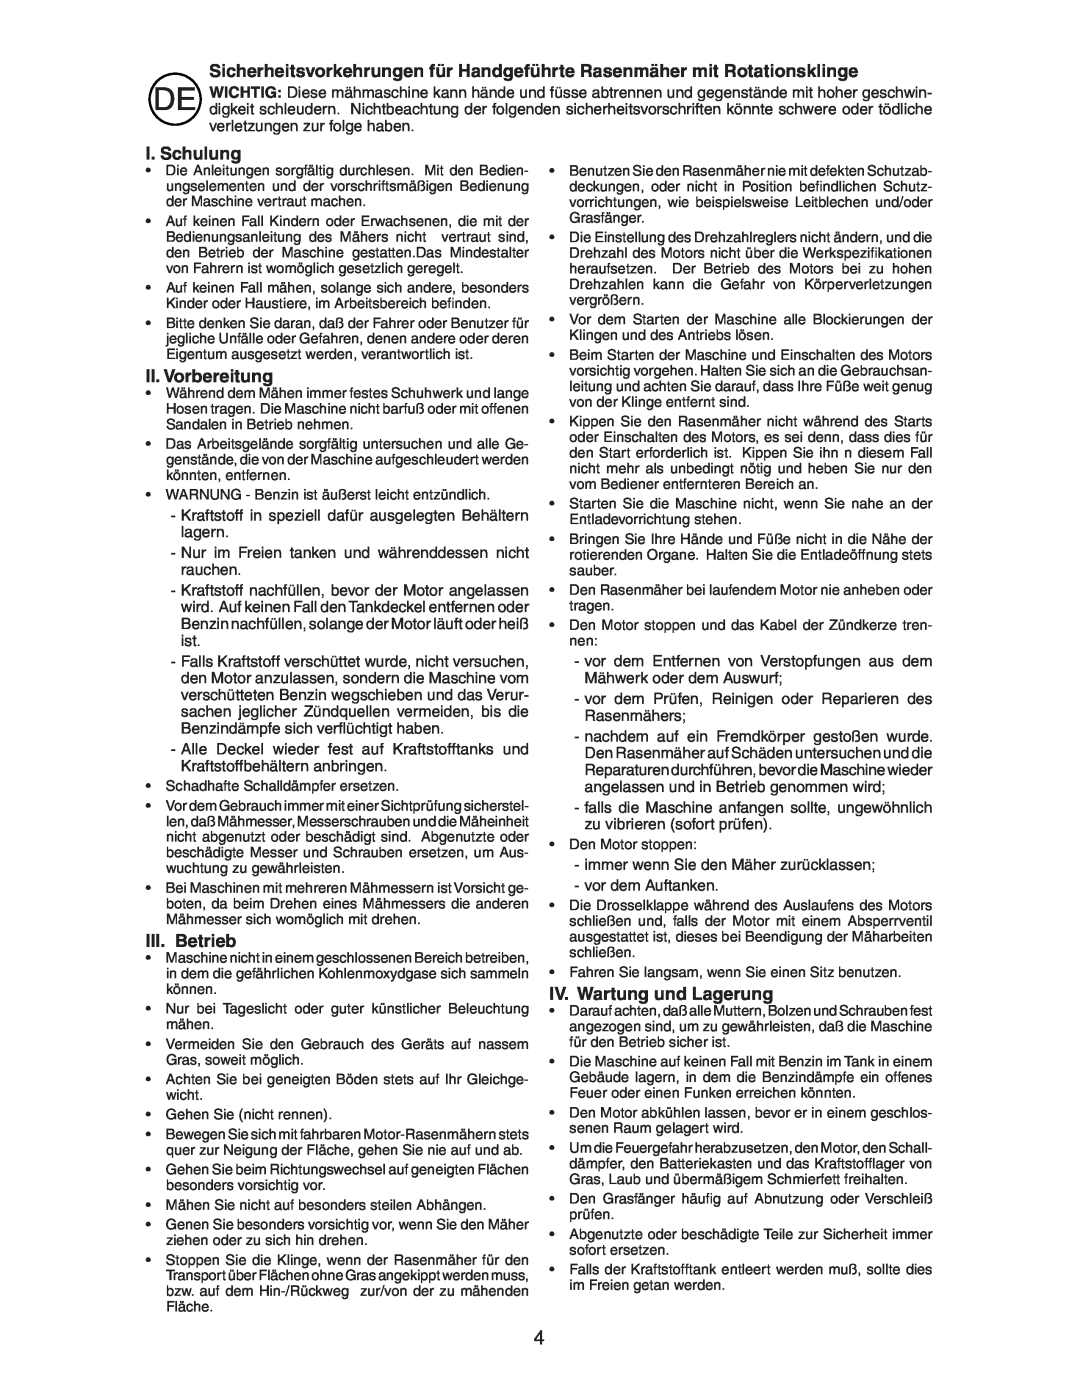 Jonsered LM2153CMD instruction manual I. Schulung, II. Vorbereitung, III. Betrieb, IV. Wartung und Lagerung 